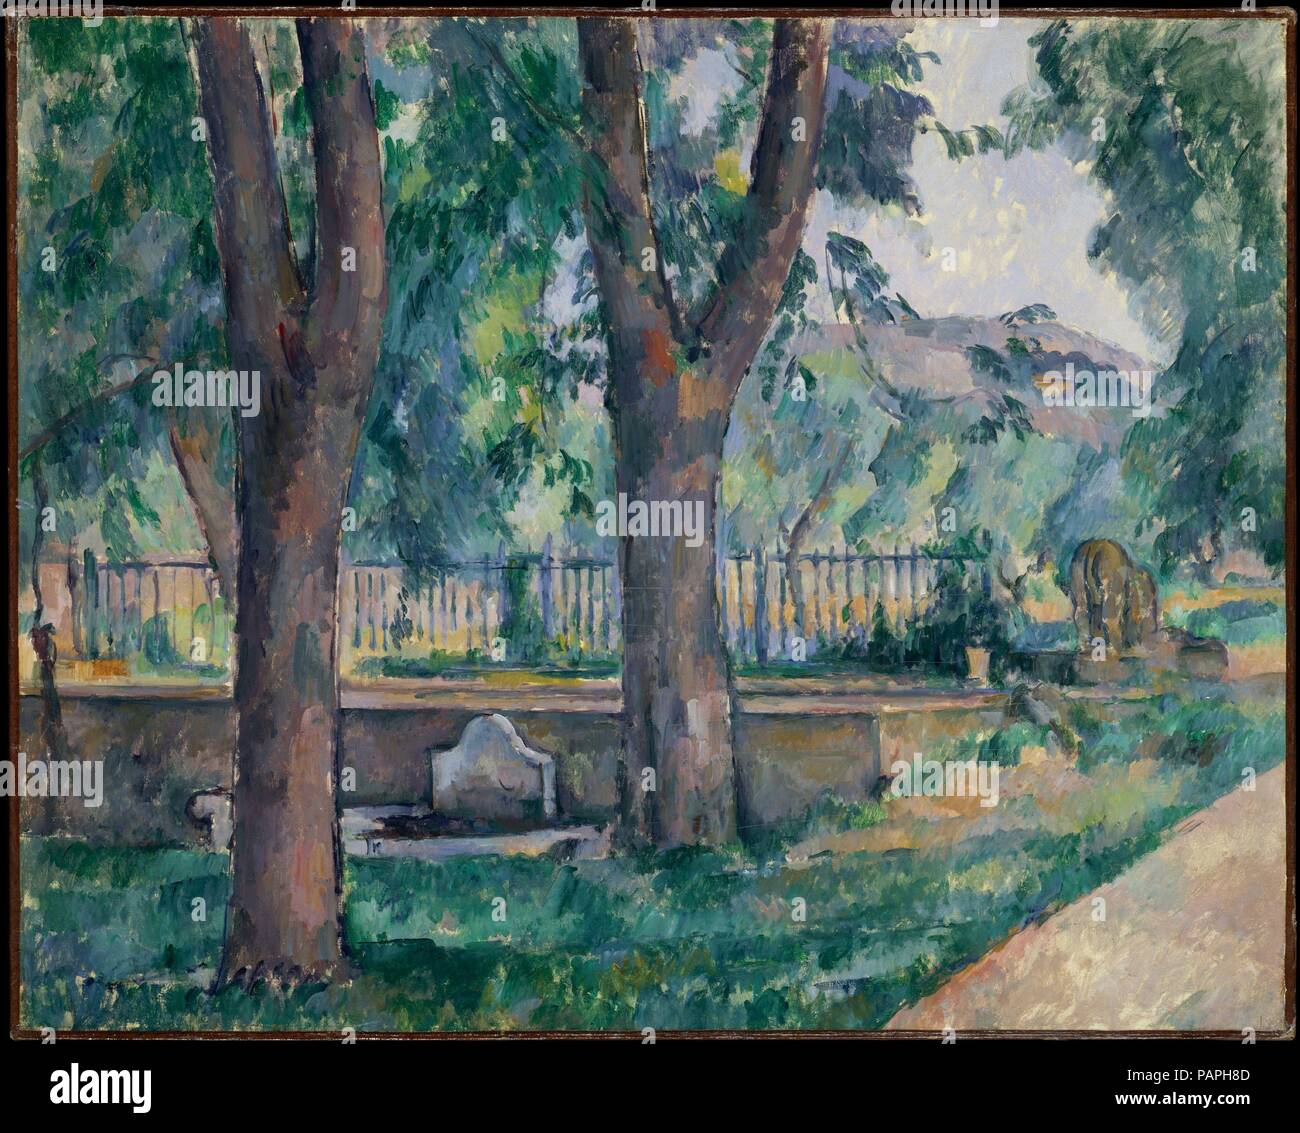 La piscina a Jas de Bouffan. Artista: Paul Cézanne (francese, Aix-en-Provence 1839-1906 Aix-en-Provence). Dimensioni: 25 1/2 x 31 7/8 in. (64,8 x 81 cm). Data: ca. 1885-86. Cézanne è affetto per la sua famiglia la station wagon, Jas de Bouffan, vicino a Aix, si riflette in molti punti di vista da lui dipinta della proprietà oltre un quarto di secolo. Egli ha illustrato la strada in basso a destra in questa composizione diverse volte nel mid-1880s. Costeggiato da alberi di castagno, è portato dal retro di un diciottesimo secolo la casa di giardini paesaggistici. Vicino alla stazione ferroviaria dividendo le zone era una piscina per la raccolta di acqua ed un lavaggio t Foto Stock